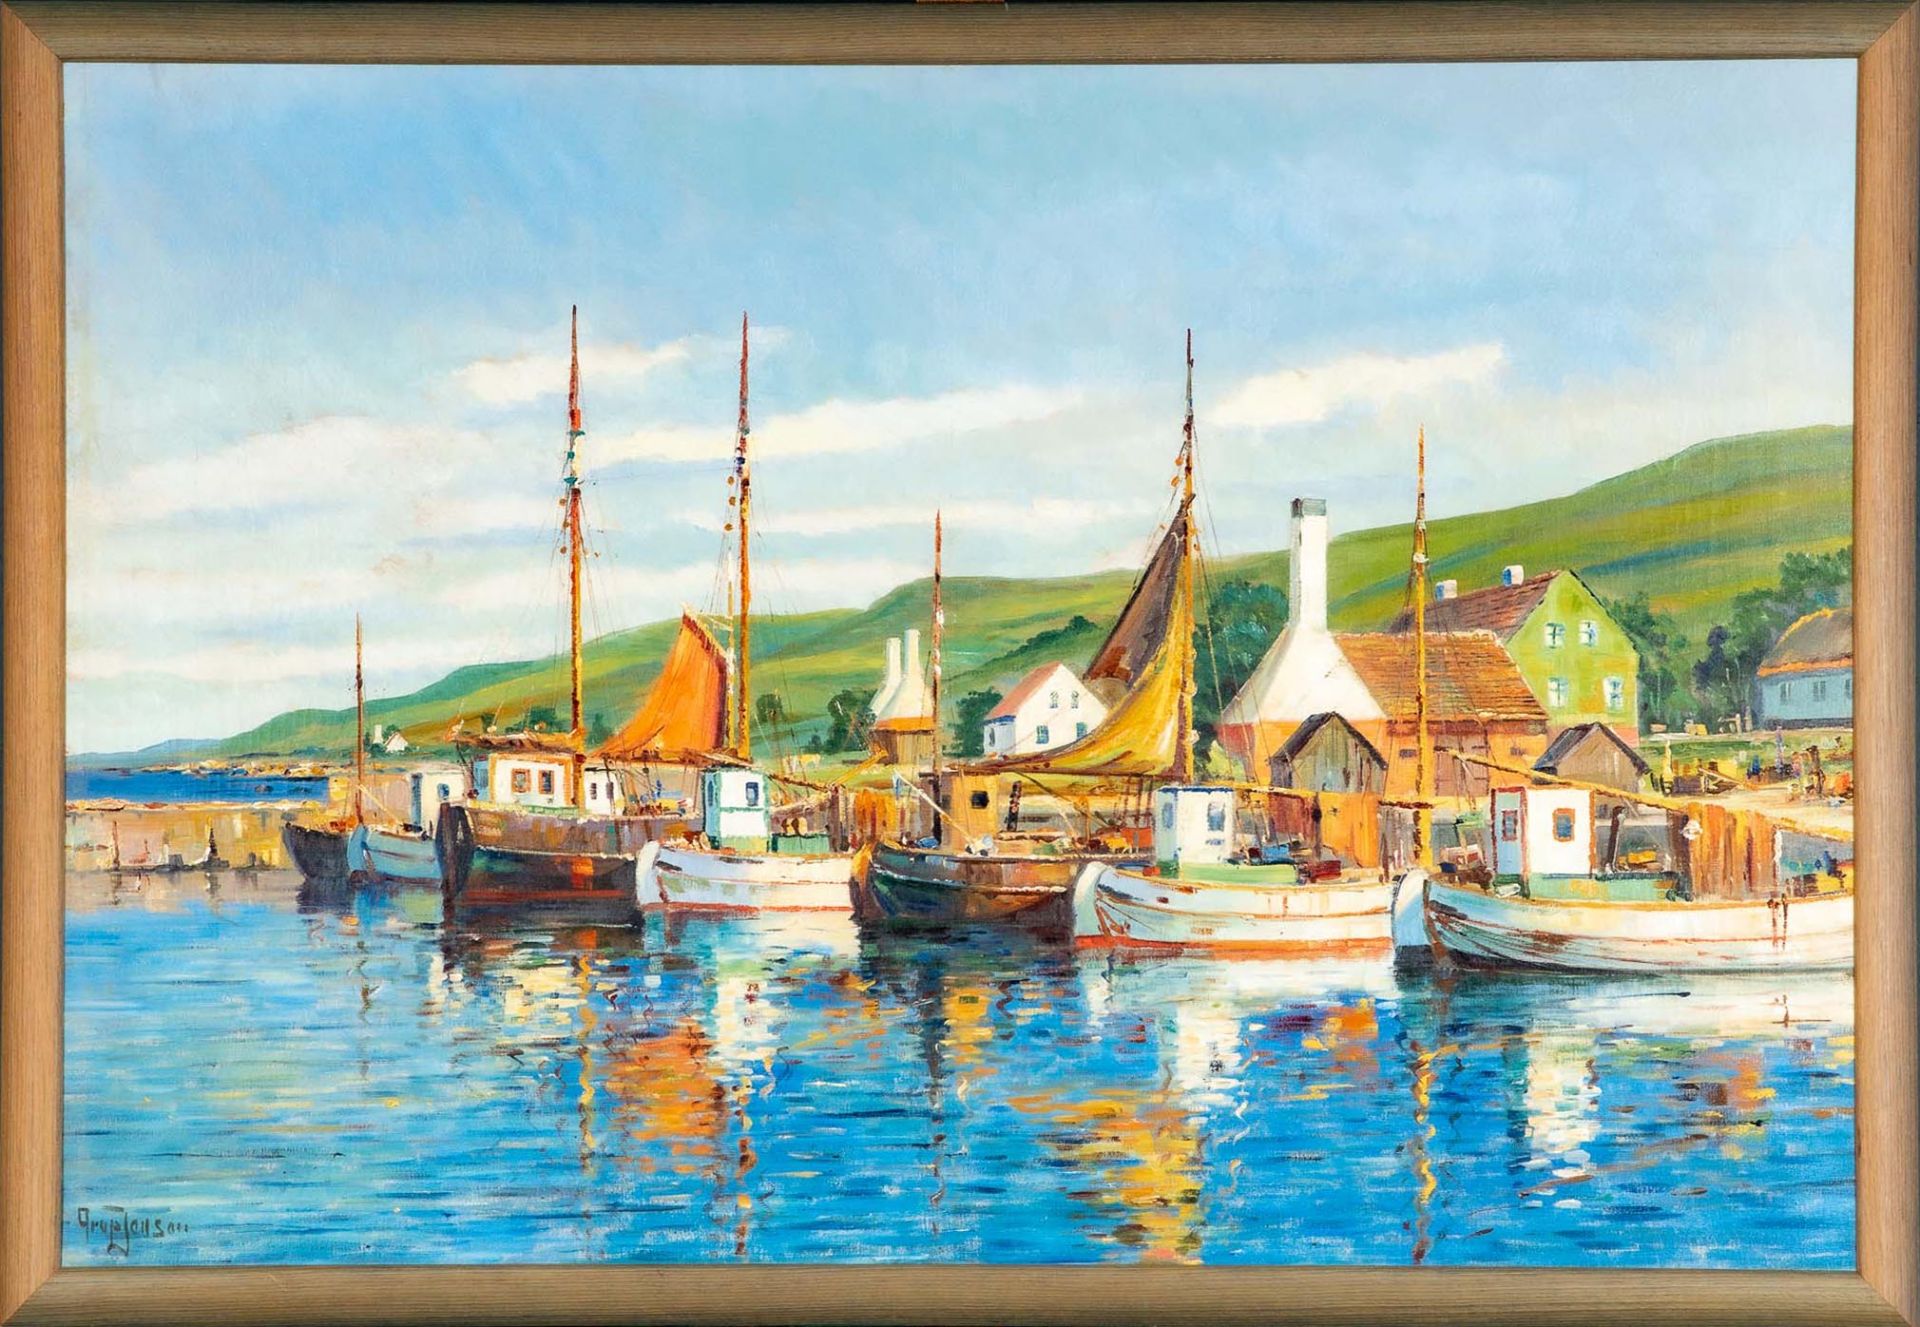 "Farbenfroher dänischer Hafen", großformatiges Gemälde, ca. 88 x 130 cm, unten links signiert: "Aru